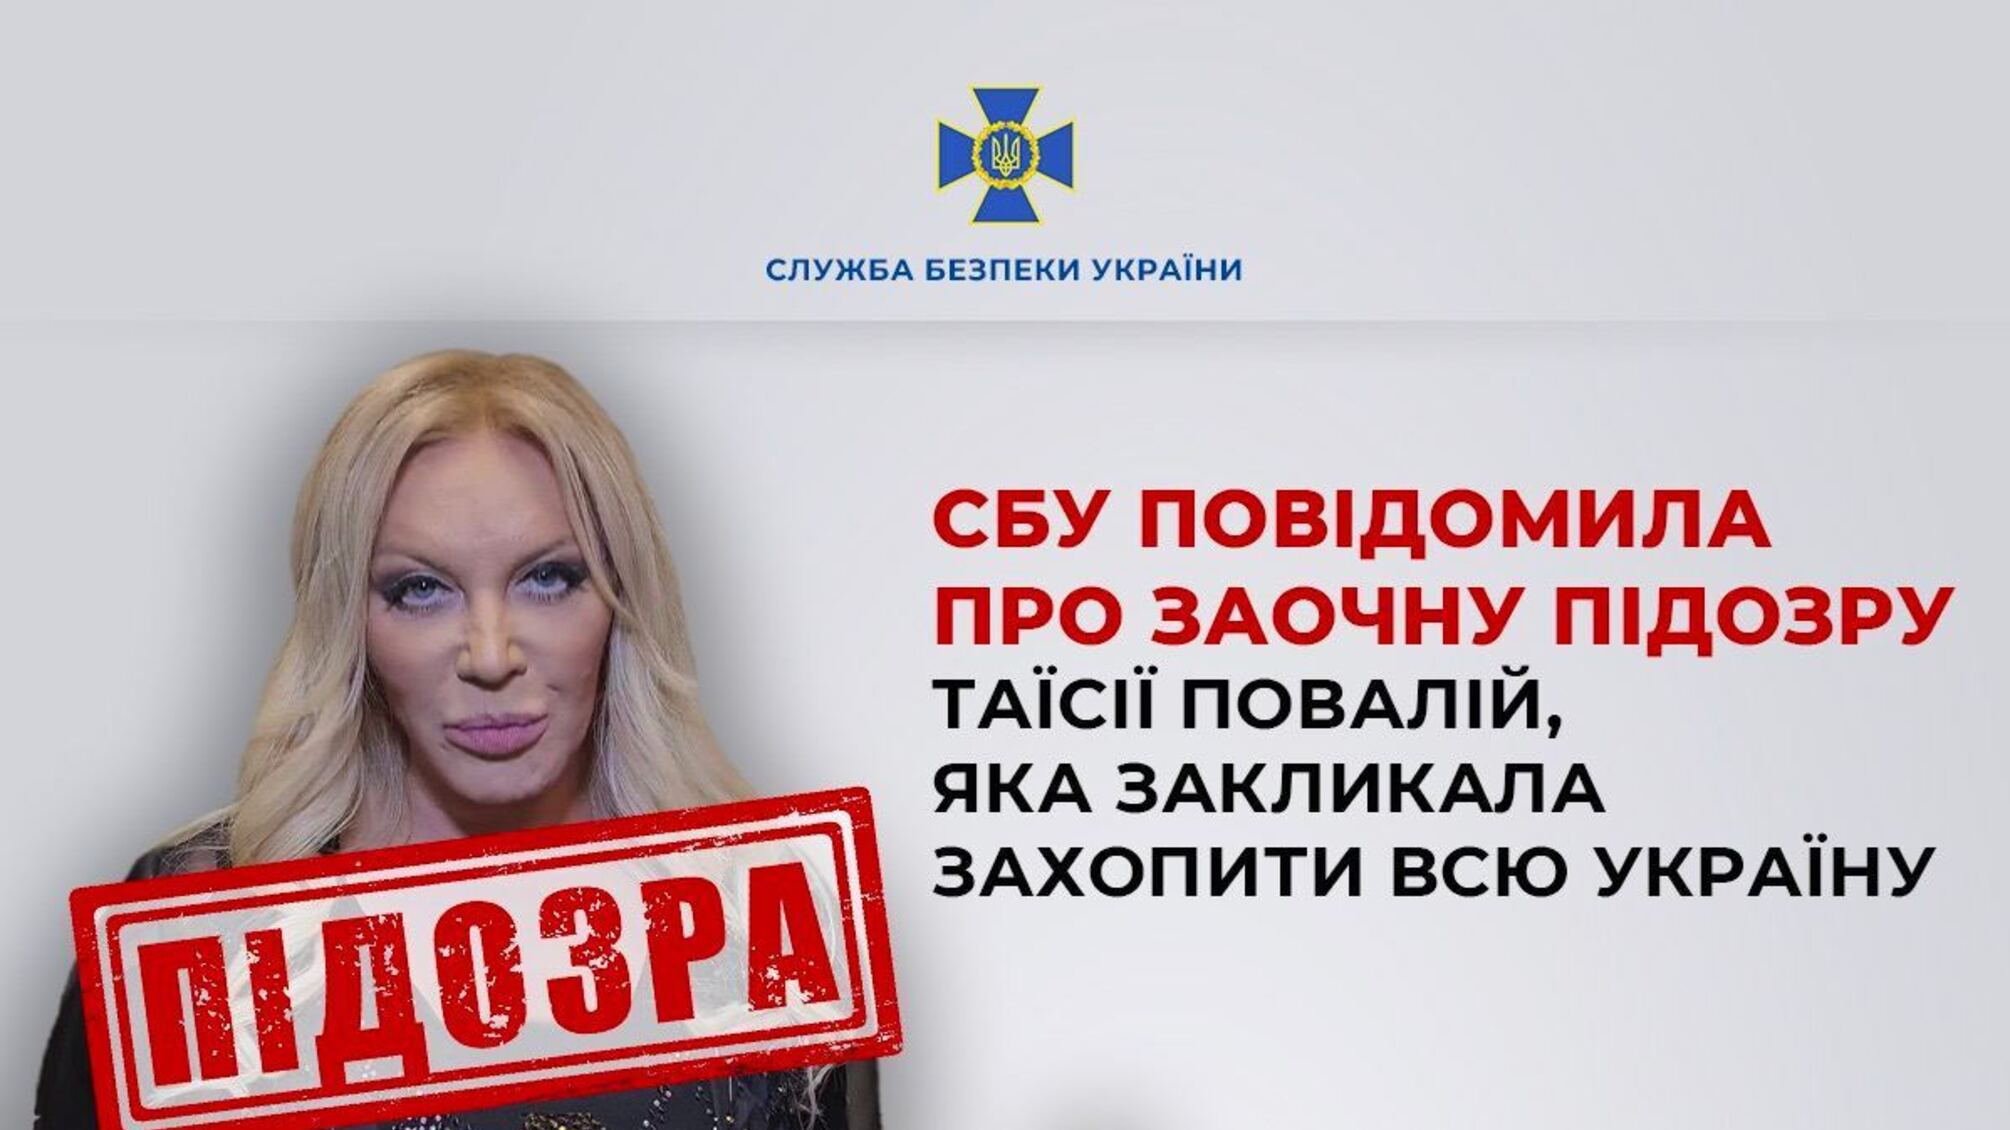 Призывала захватить Украину: Повалий получила подозрение